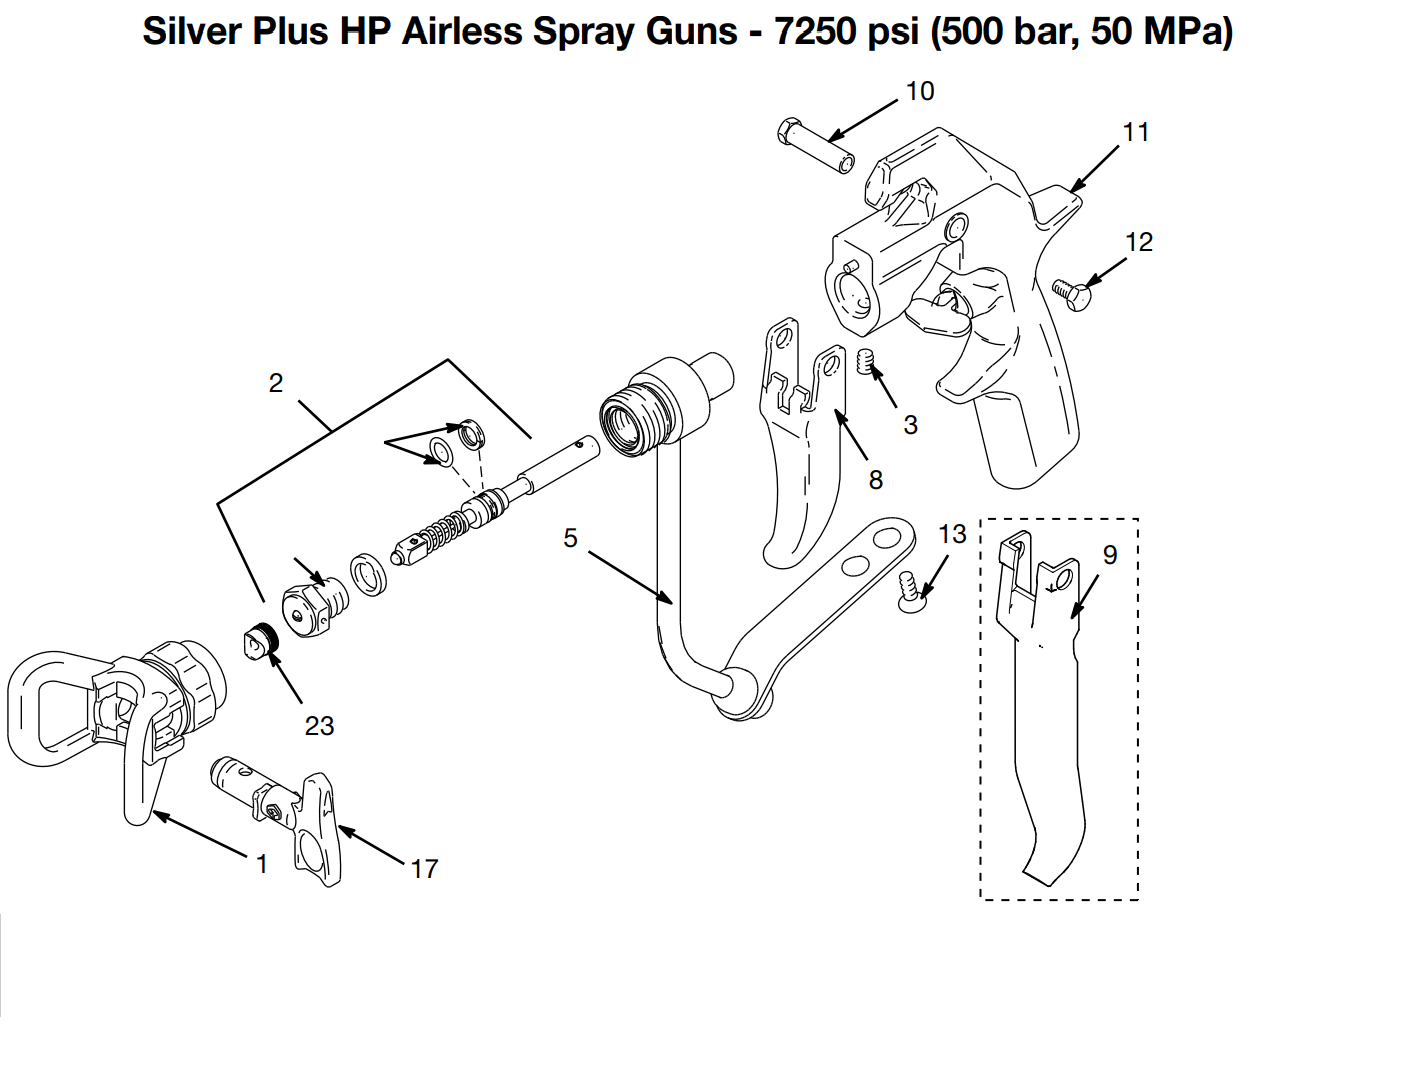 Graco Silver Plus HP Airless Spray Gun